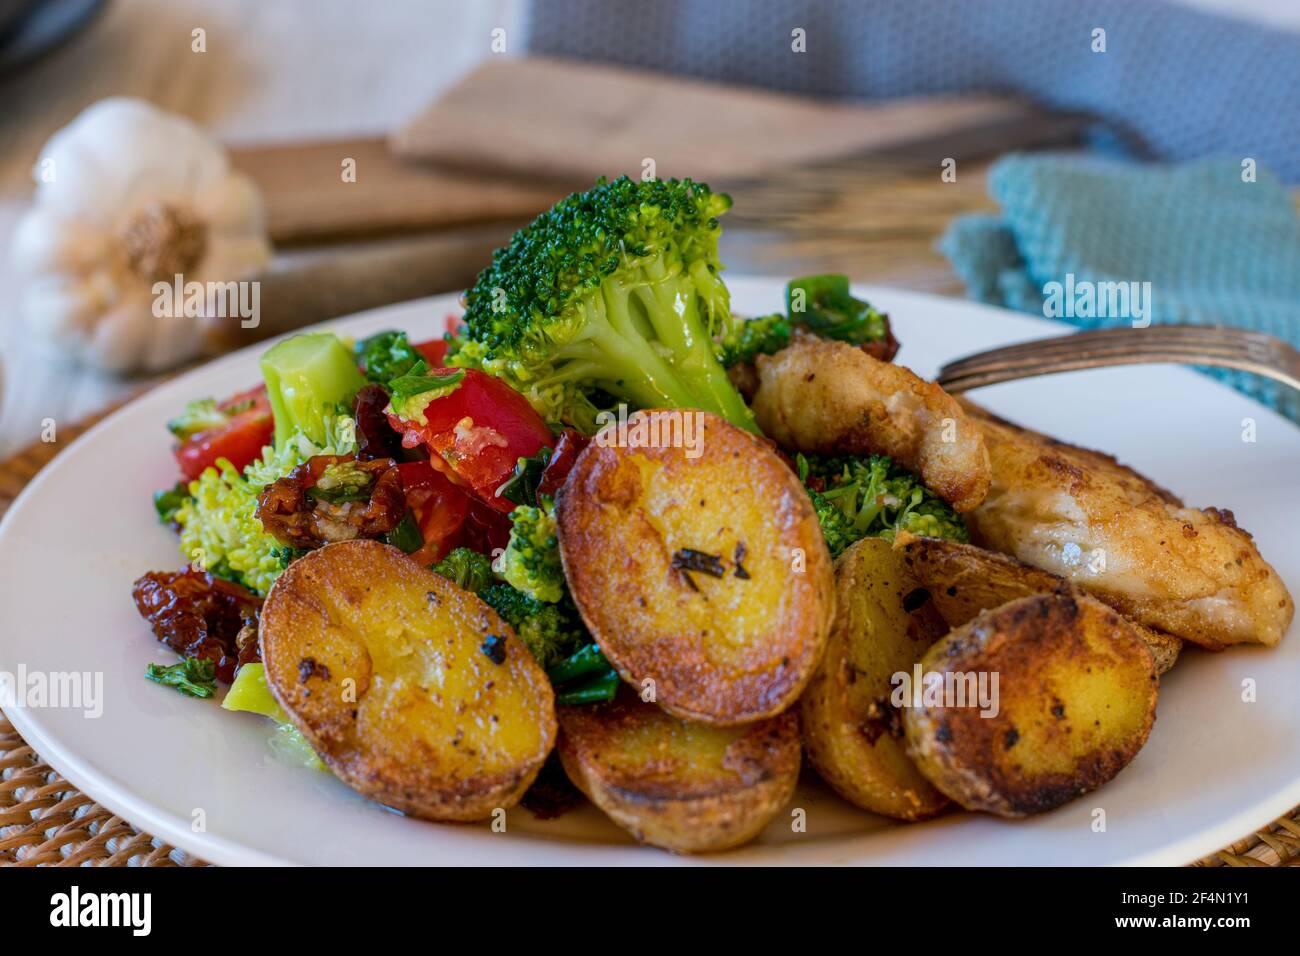 salade de brocoli méditerranéenne et pommes de terre au romarin rôties servies en tant que accompagnement sur une assiette avec poisson frit Banque D'Images